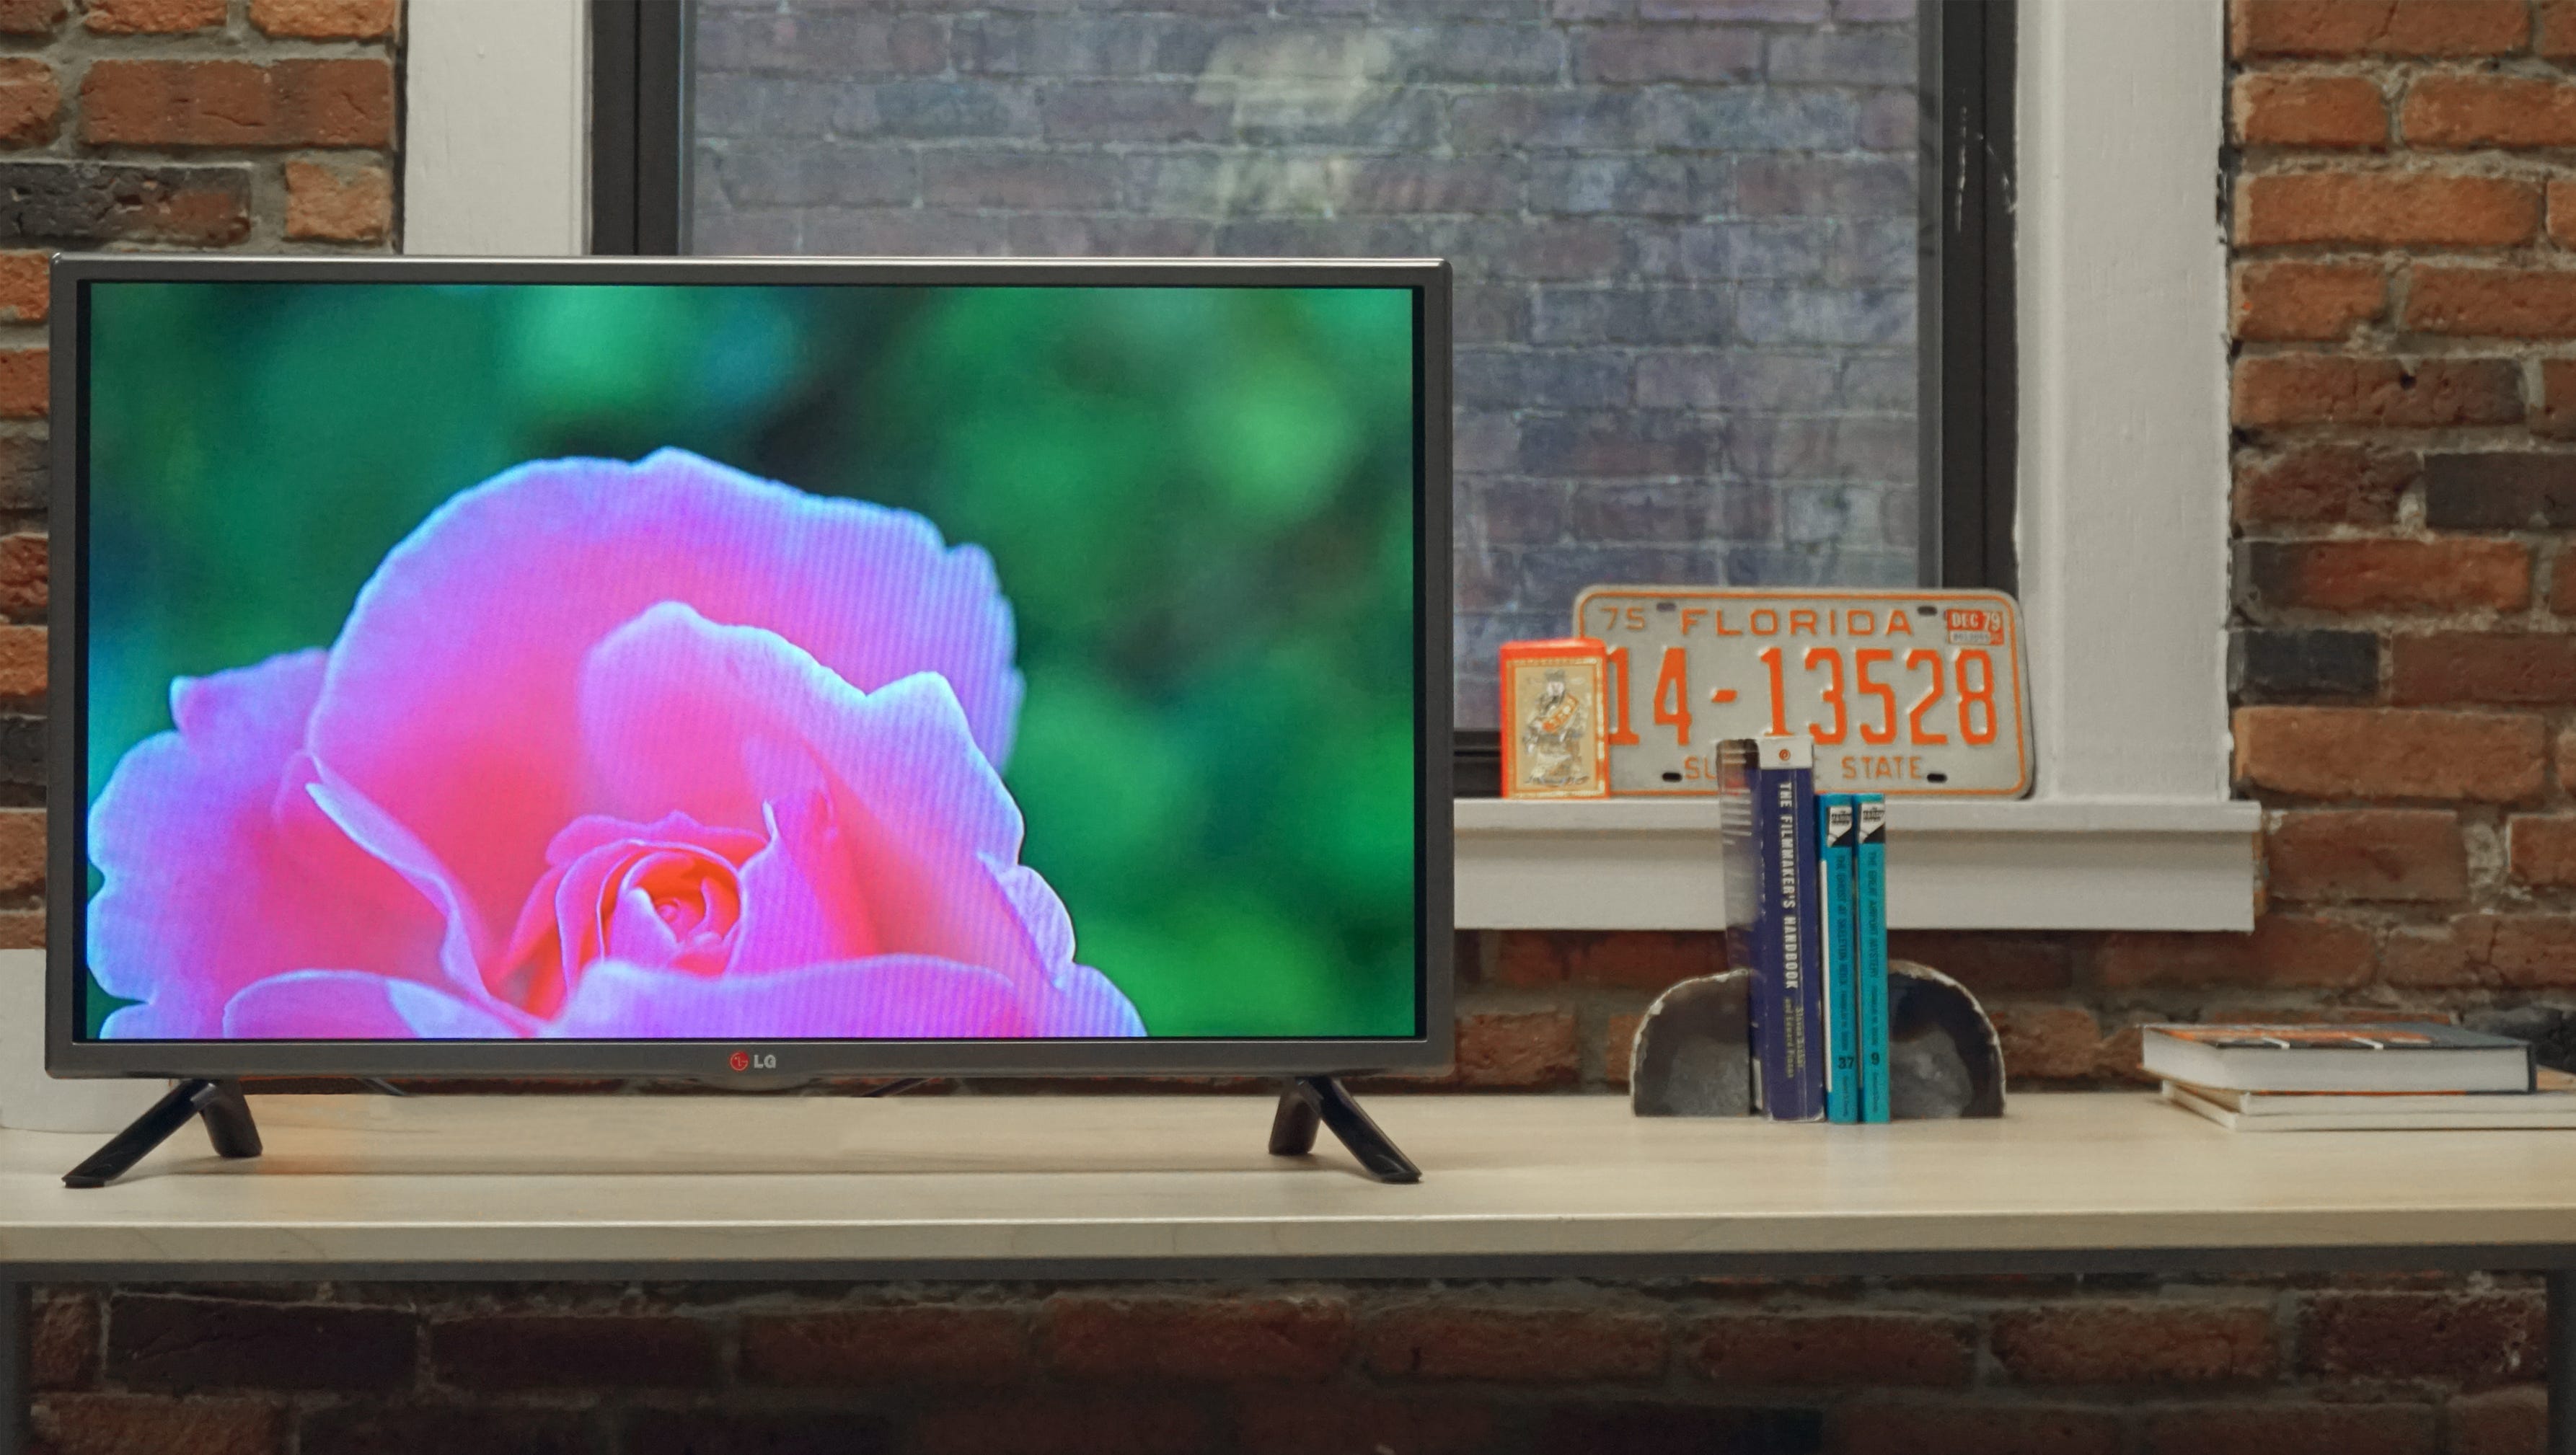 LG led TV 2015. LG 32lb563v. LG TV 32 inch 2015. Телевизор lg 2015